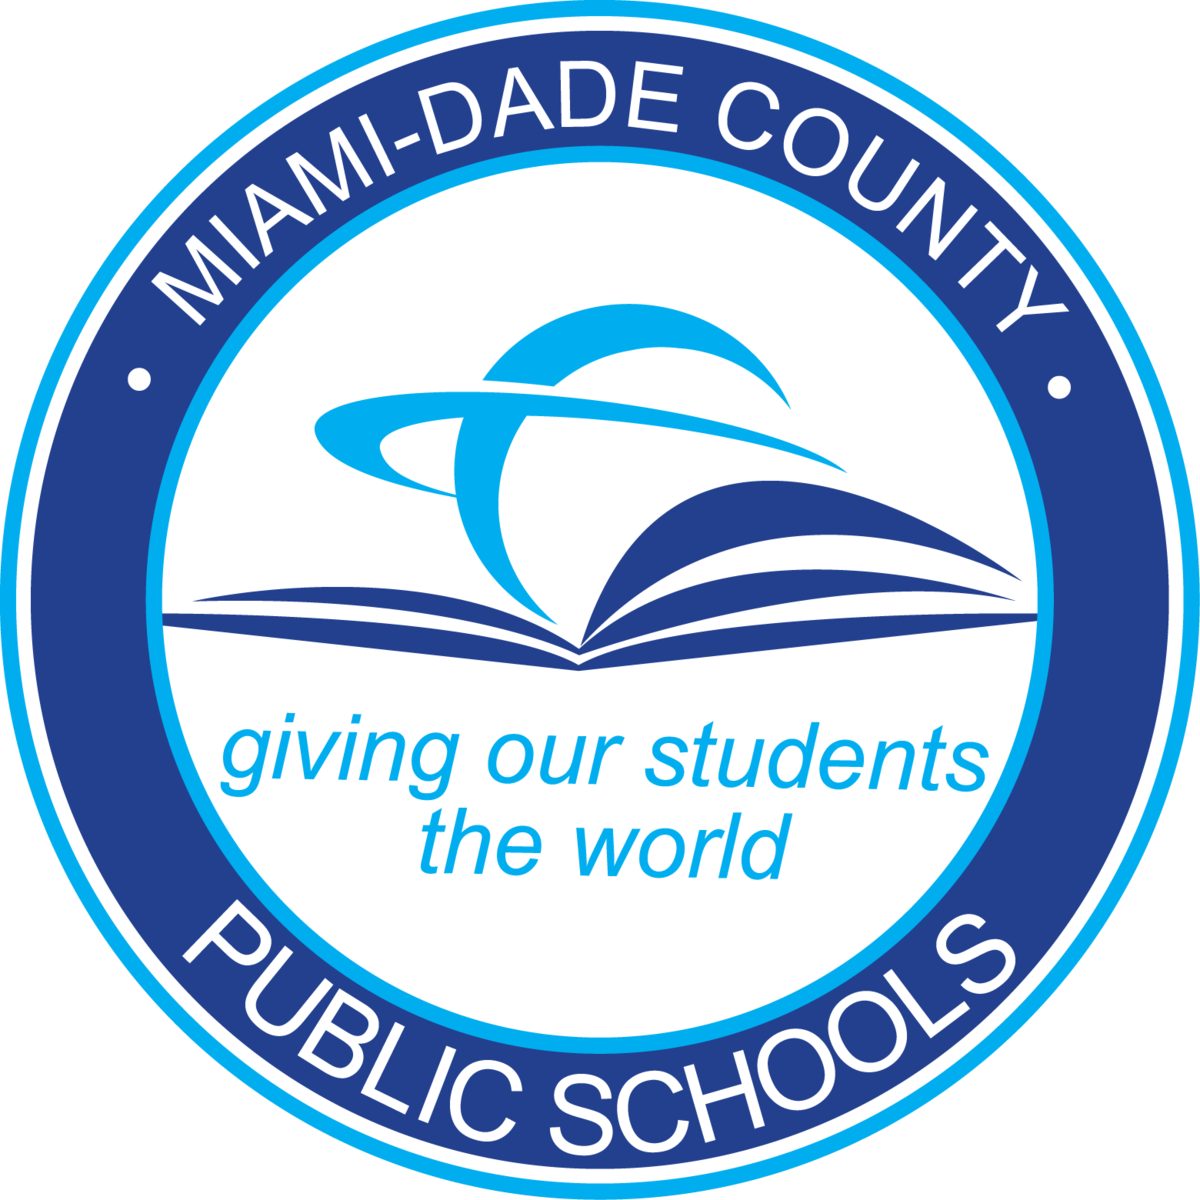 MIAMIDADE COUNTY PUBLIC SCHOOLS